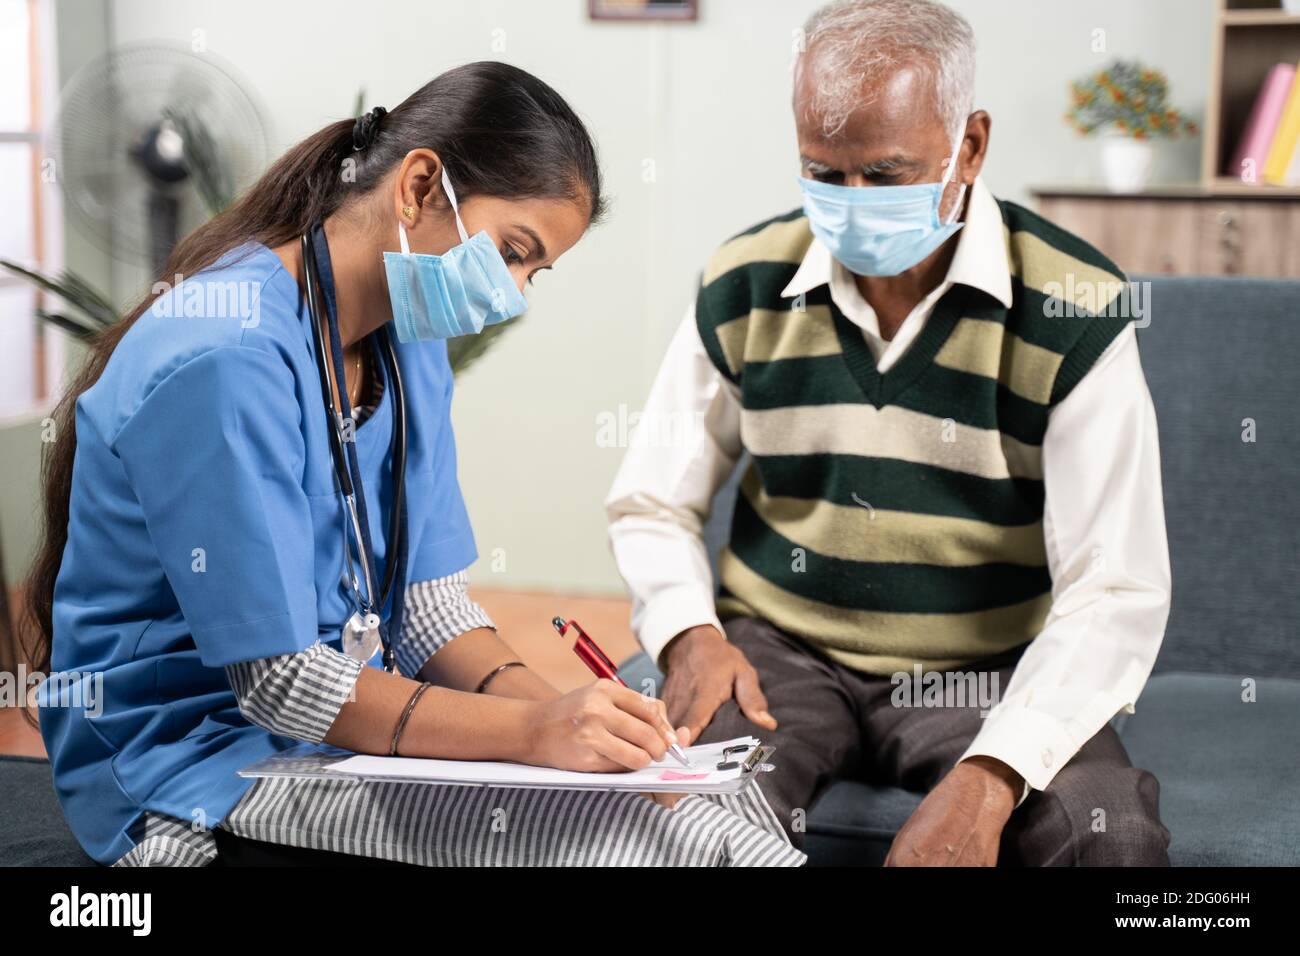 Junge Arzt oder Krankenschwester schreiben Rezept während des Hausbesuches zu Kranker älterer Mann, während beide Gesichtsmaske getragen wegen Coronavirus covid-19 Pandemie Stockfoto